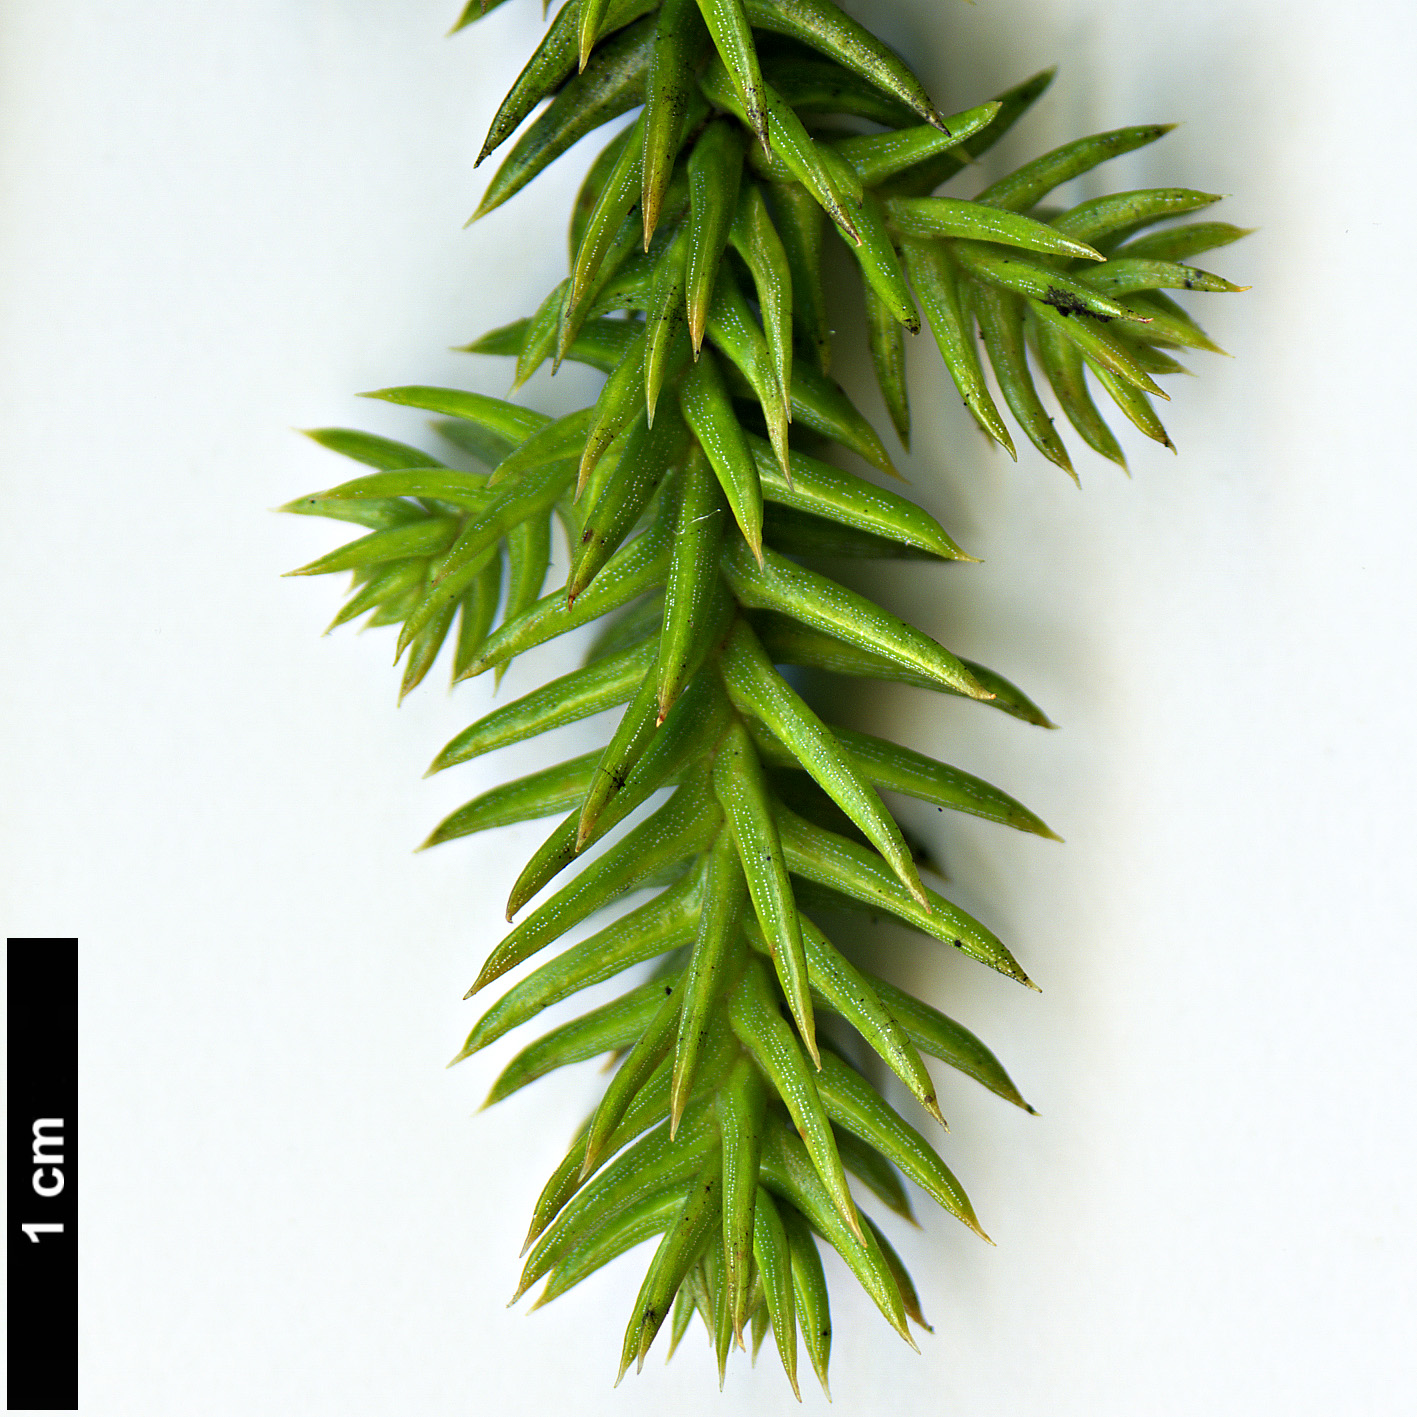 High resolution image: Family: Araucariaceae - Genus: Araucaria - Taxon: cunninghamii